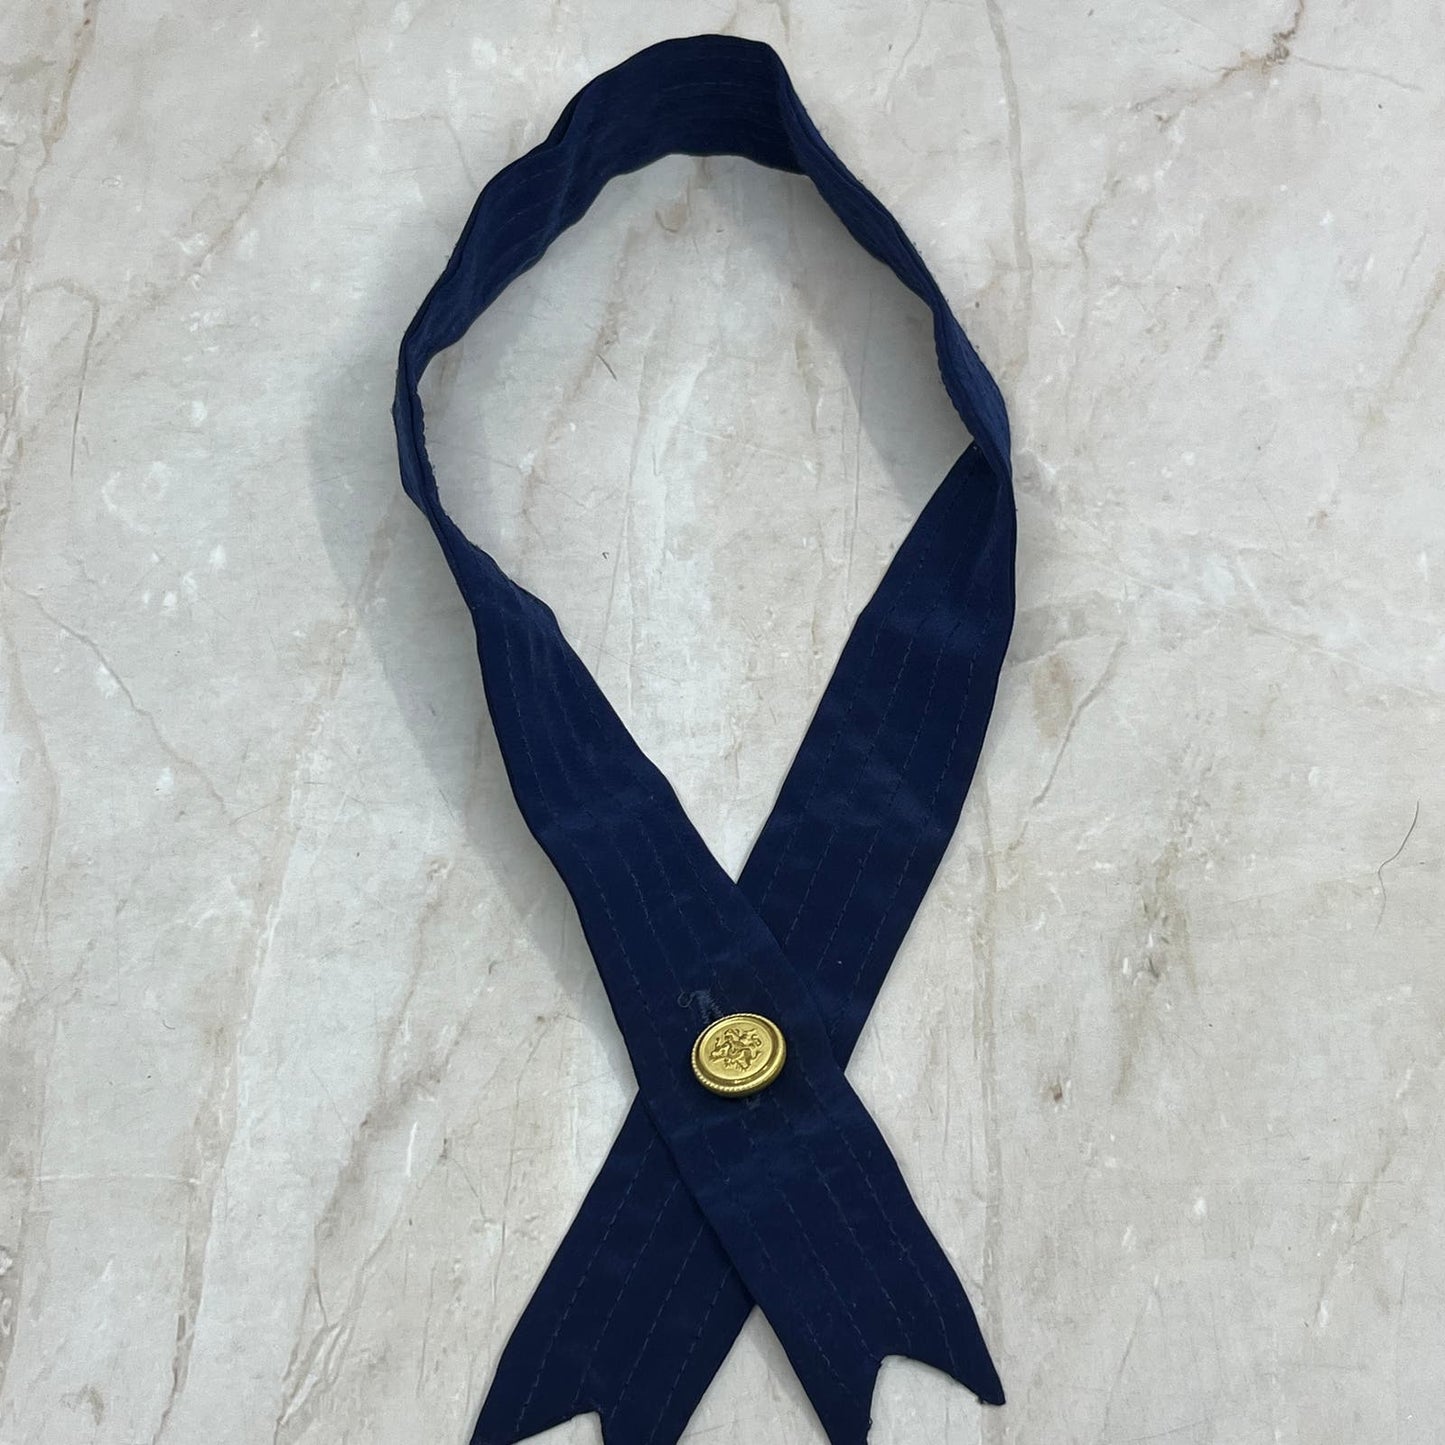 Retro Navy Blue Cross Tie With Gold Button Necktie Tie TJ4-T1